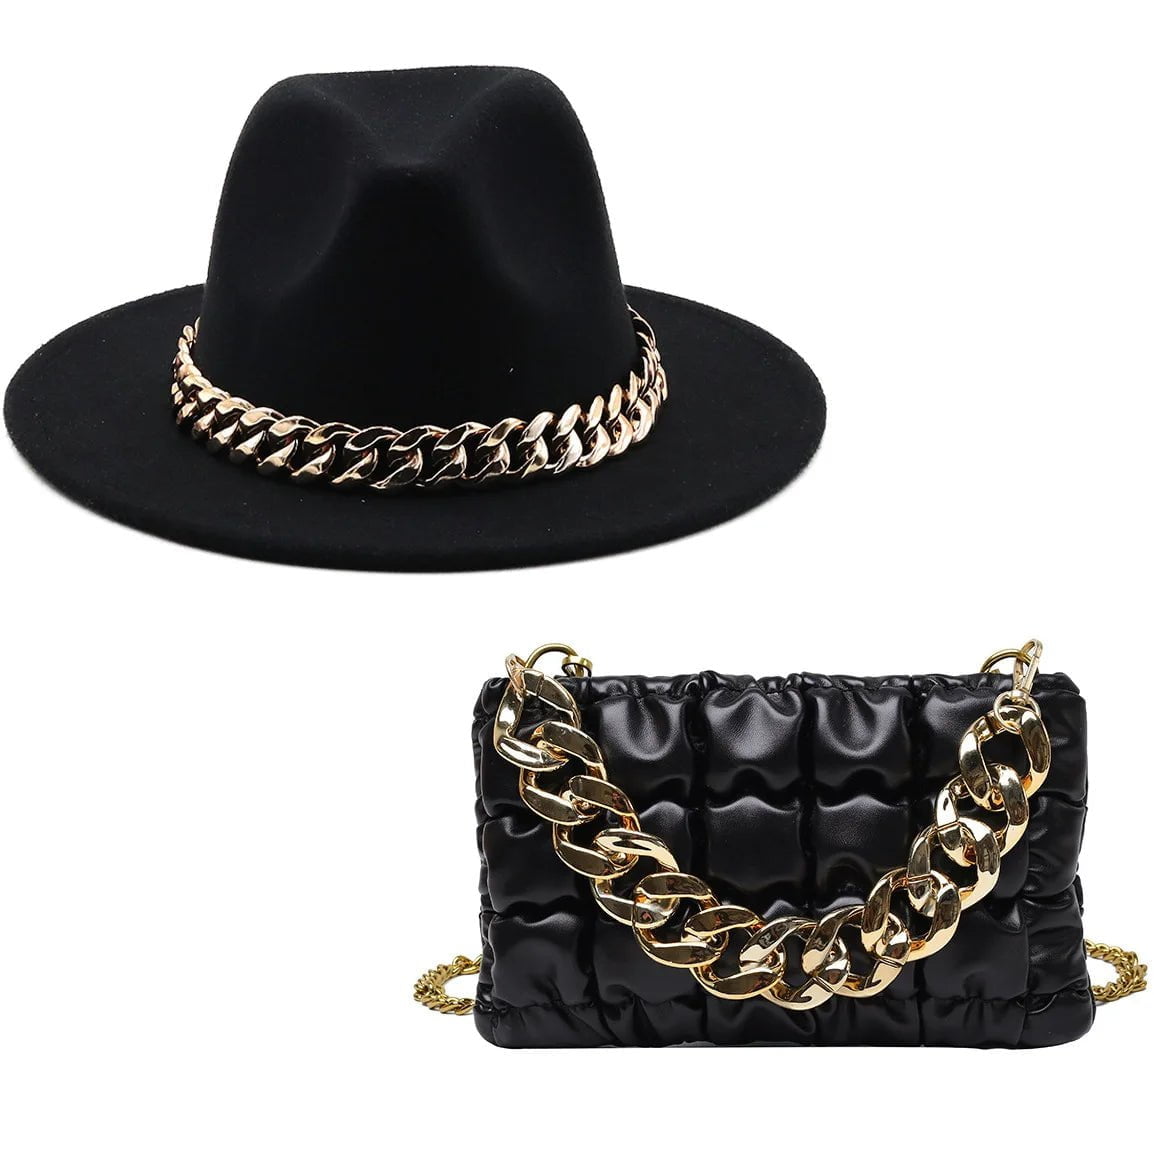 La boutique du chapeau 2 pièces noir / 56-58cm Chapeau et sac assorti